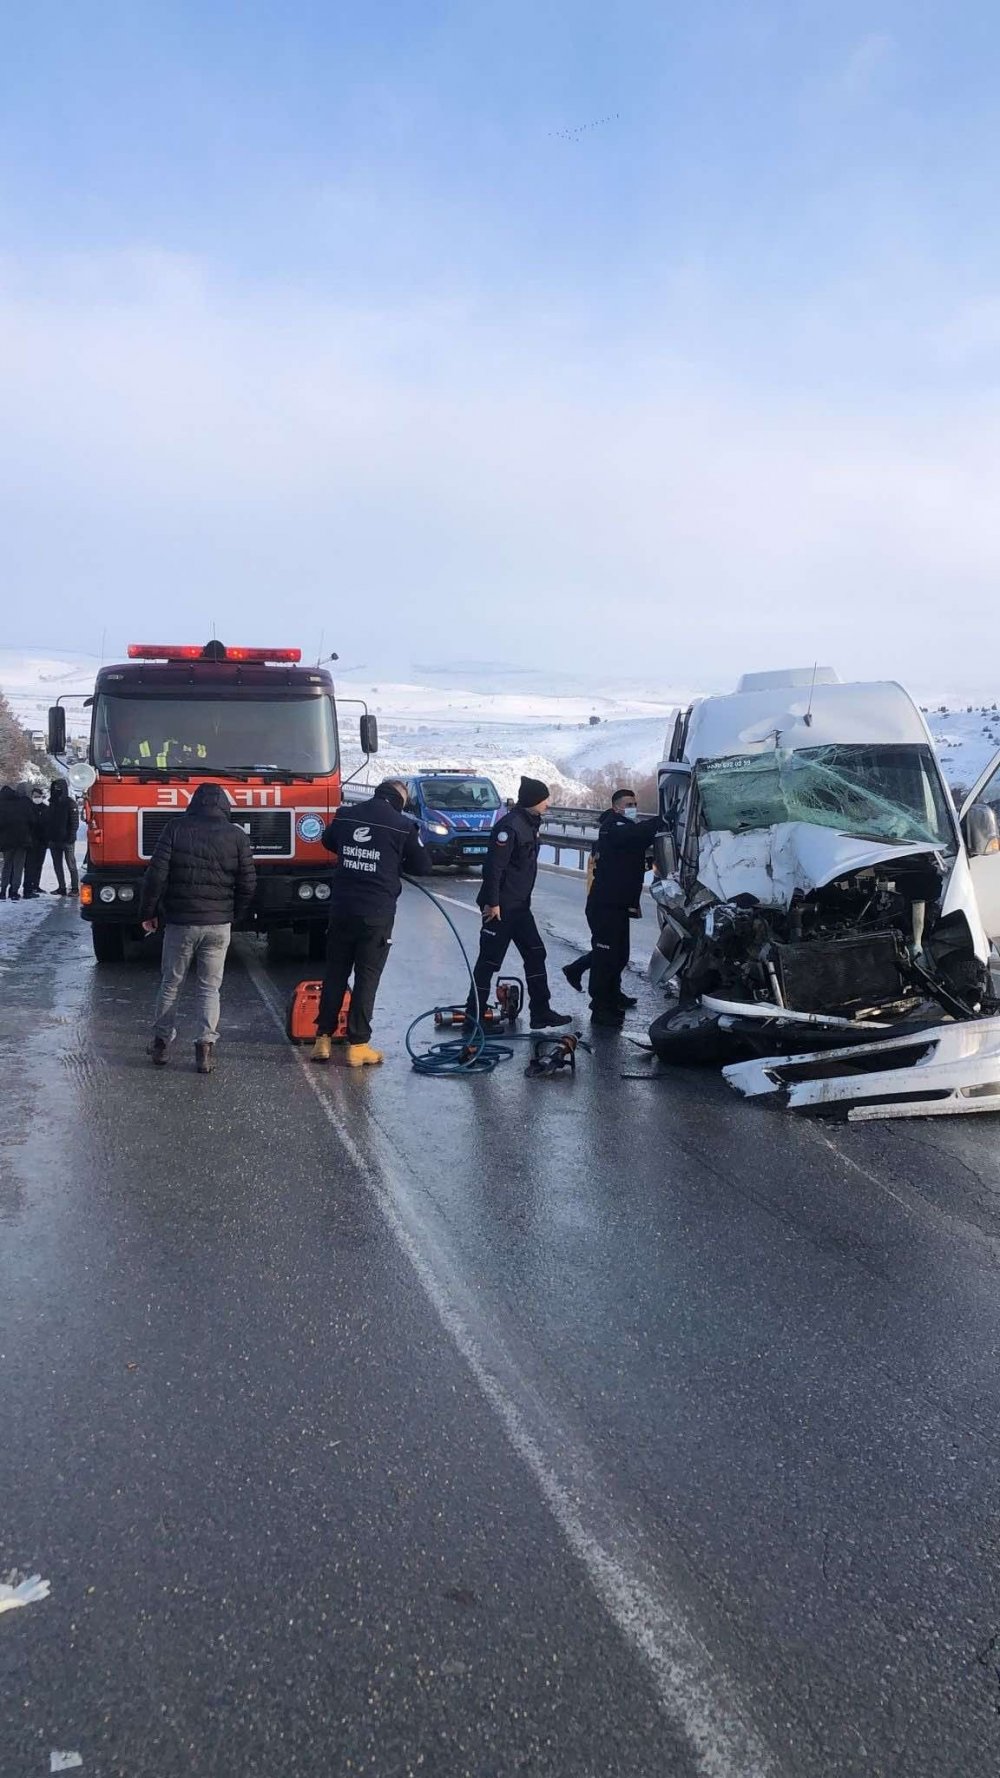 Denizli’deki lisede okuyan öğrencileri ve öğretmenleri taşıyan servis minibüsünün Eskişehir’de kamyona arkadan çarpması sonucu meydana gelen kazada 1’i ağır 16 kişi yaralandı.